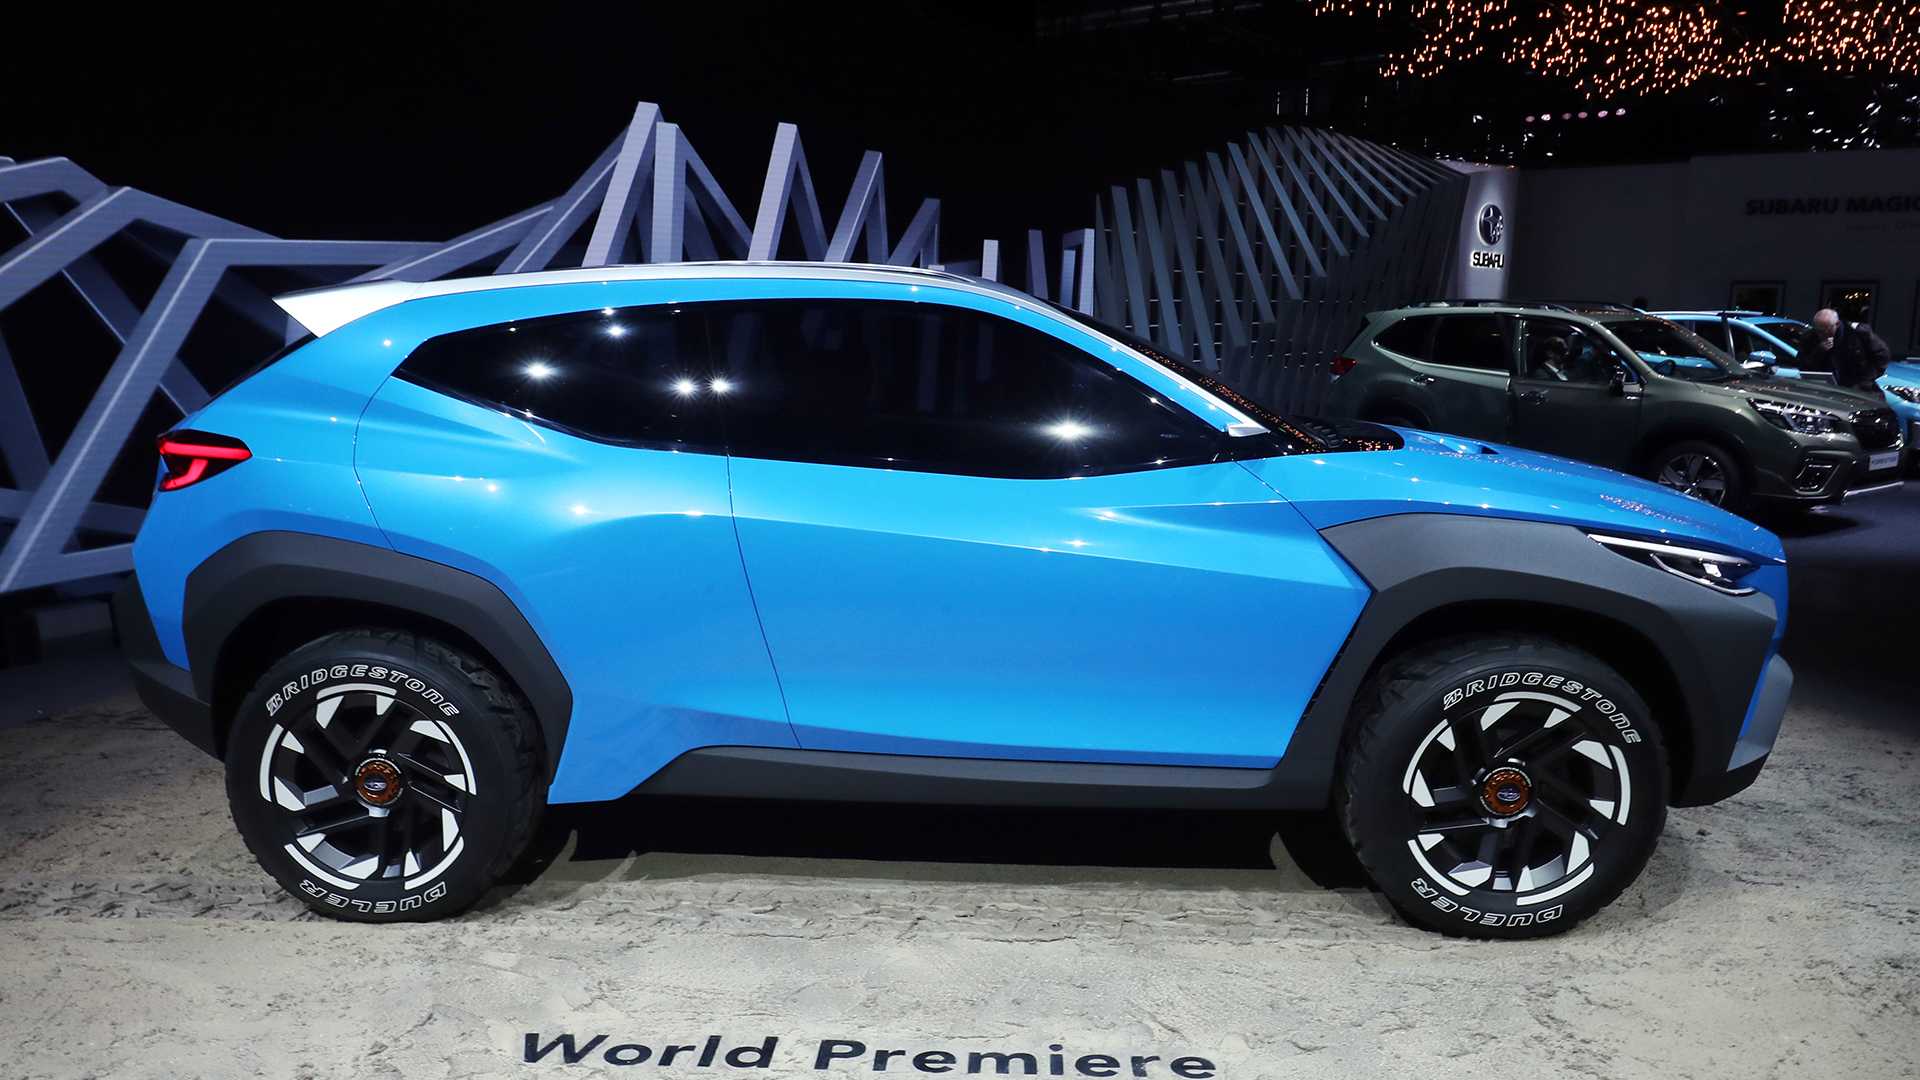 2019日内瓦车展全新设计的演变 斯巴鲁Viziv概念车亮相